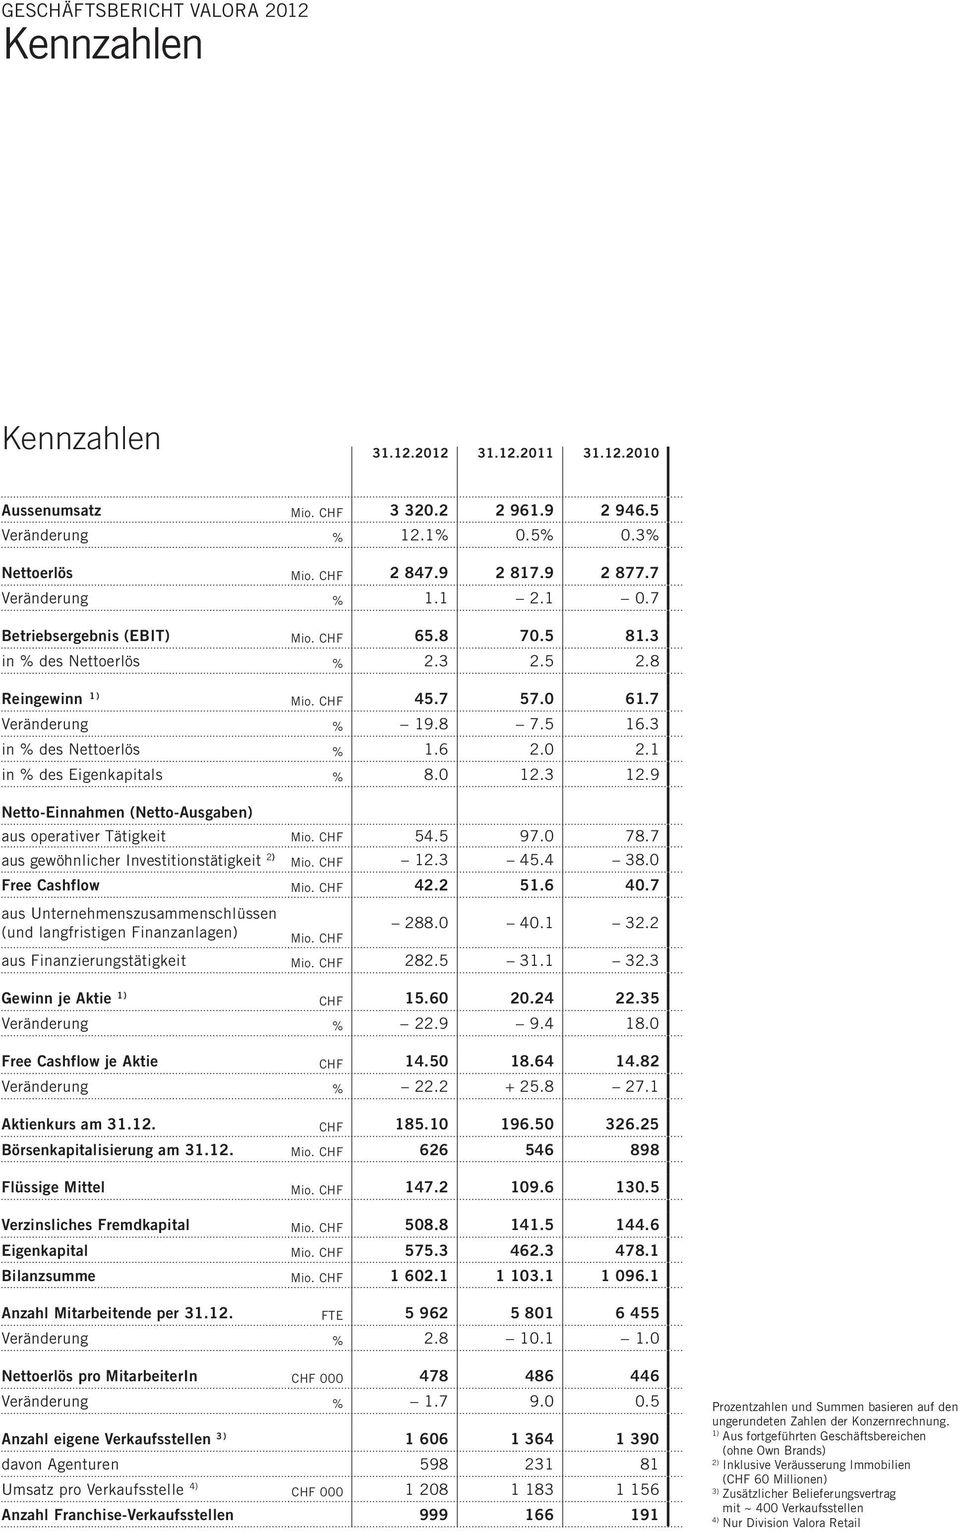 3 in % des Nettoerlös % 1.6 2.0 2.1 in % des Eigenkapitals % 8.0 12.3 12.9 Netto-Einnahmen (Netto-Ausgaben) aus operativer Tätigkeit Mio. CHF 54.5 97.0 78.